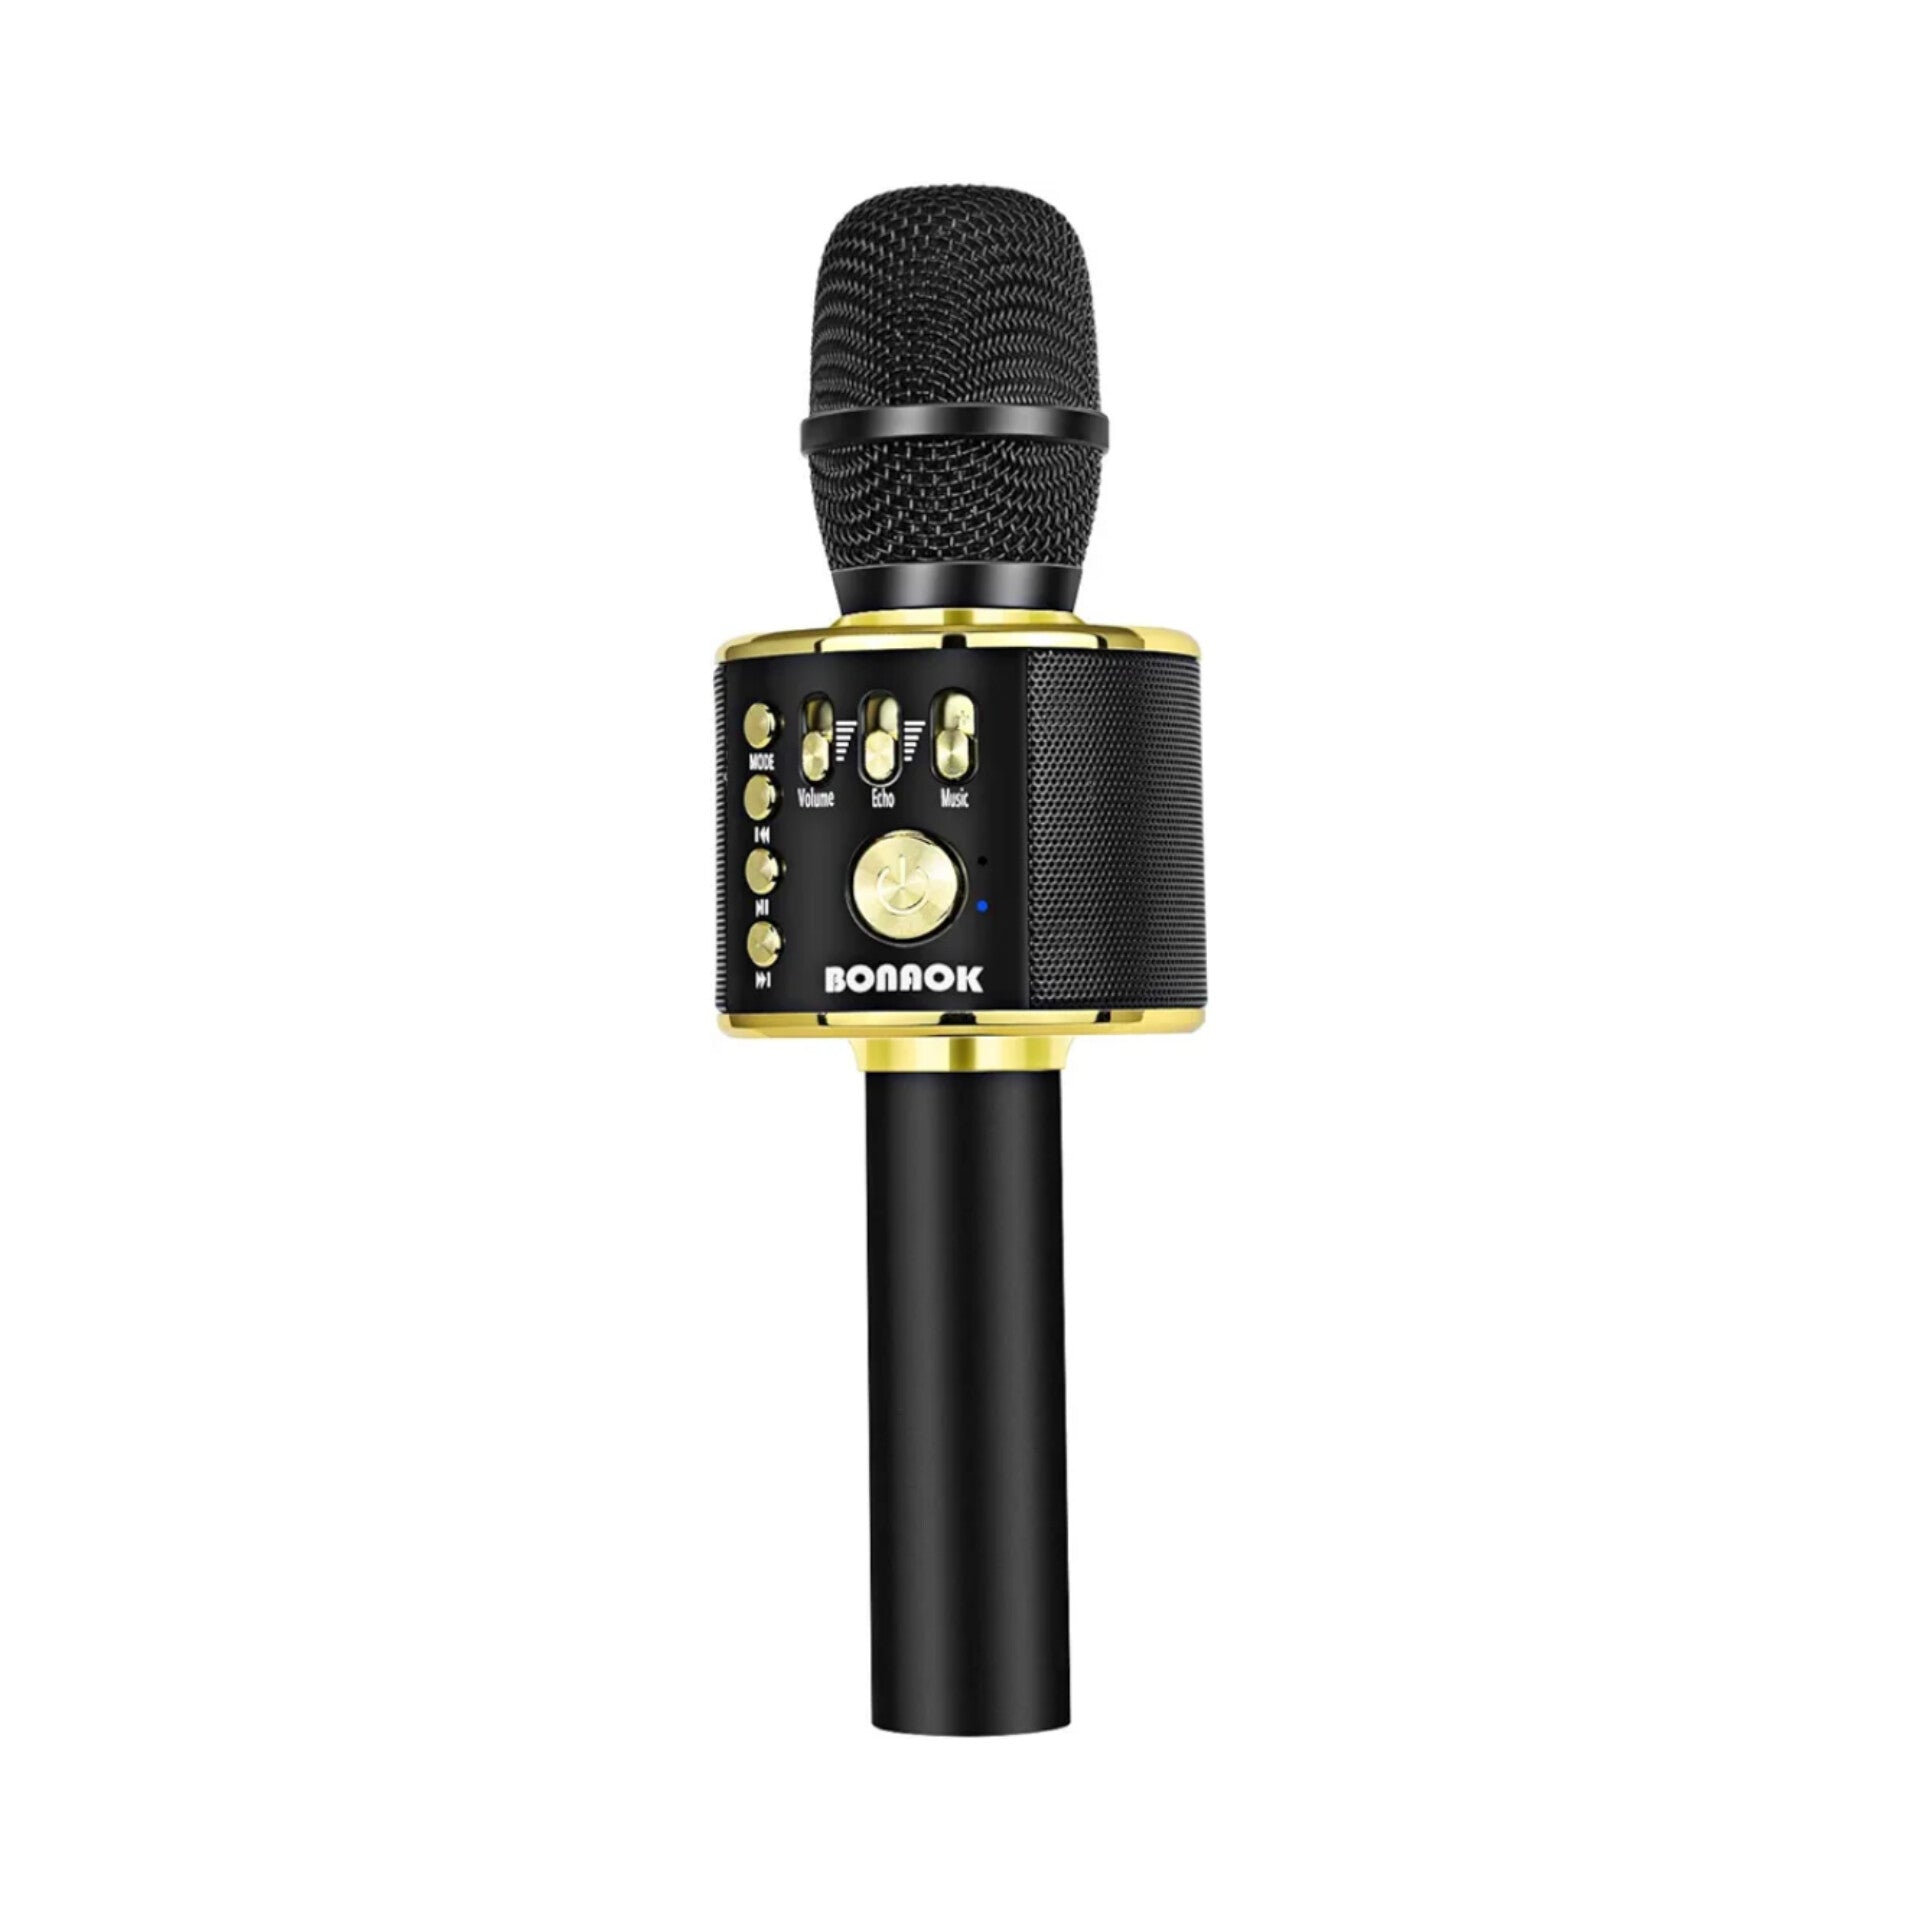 BONAOK- Micrófono inalámbrico Bluetooth Karaoke, dorado y negro